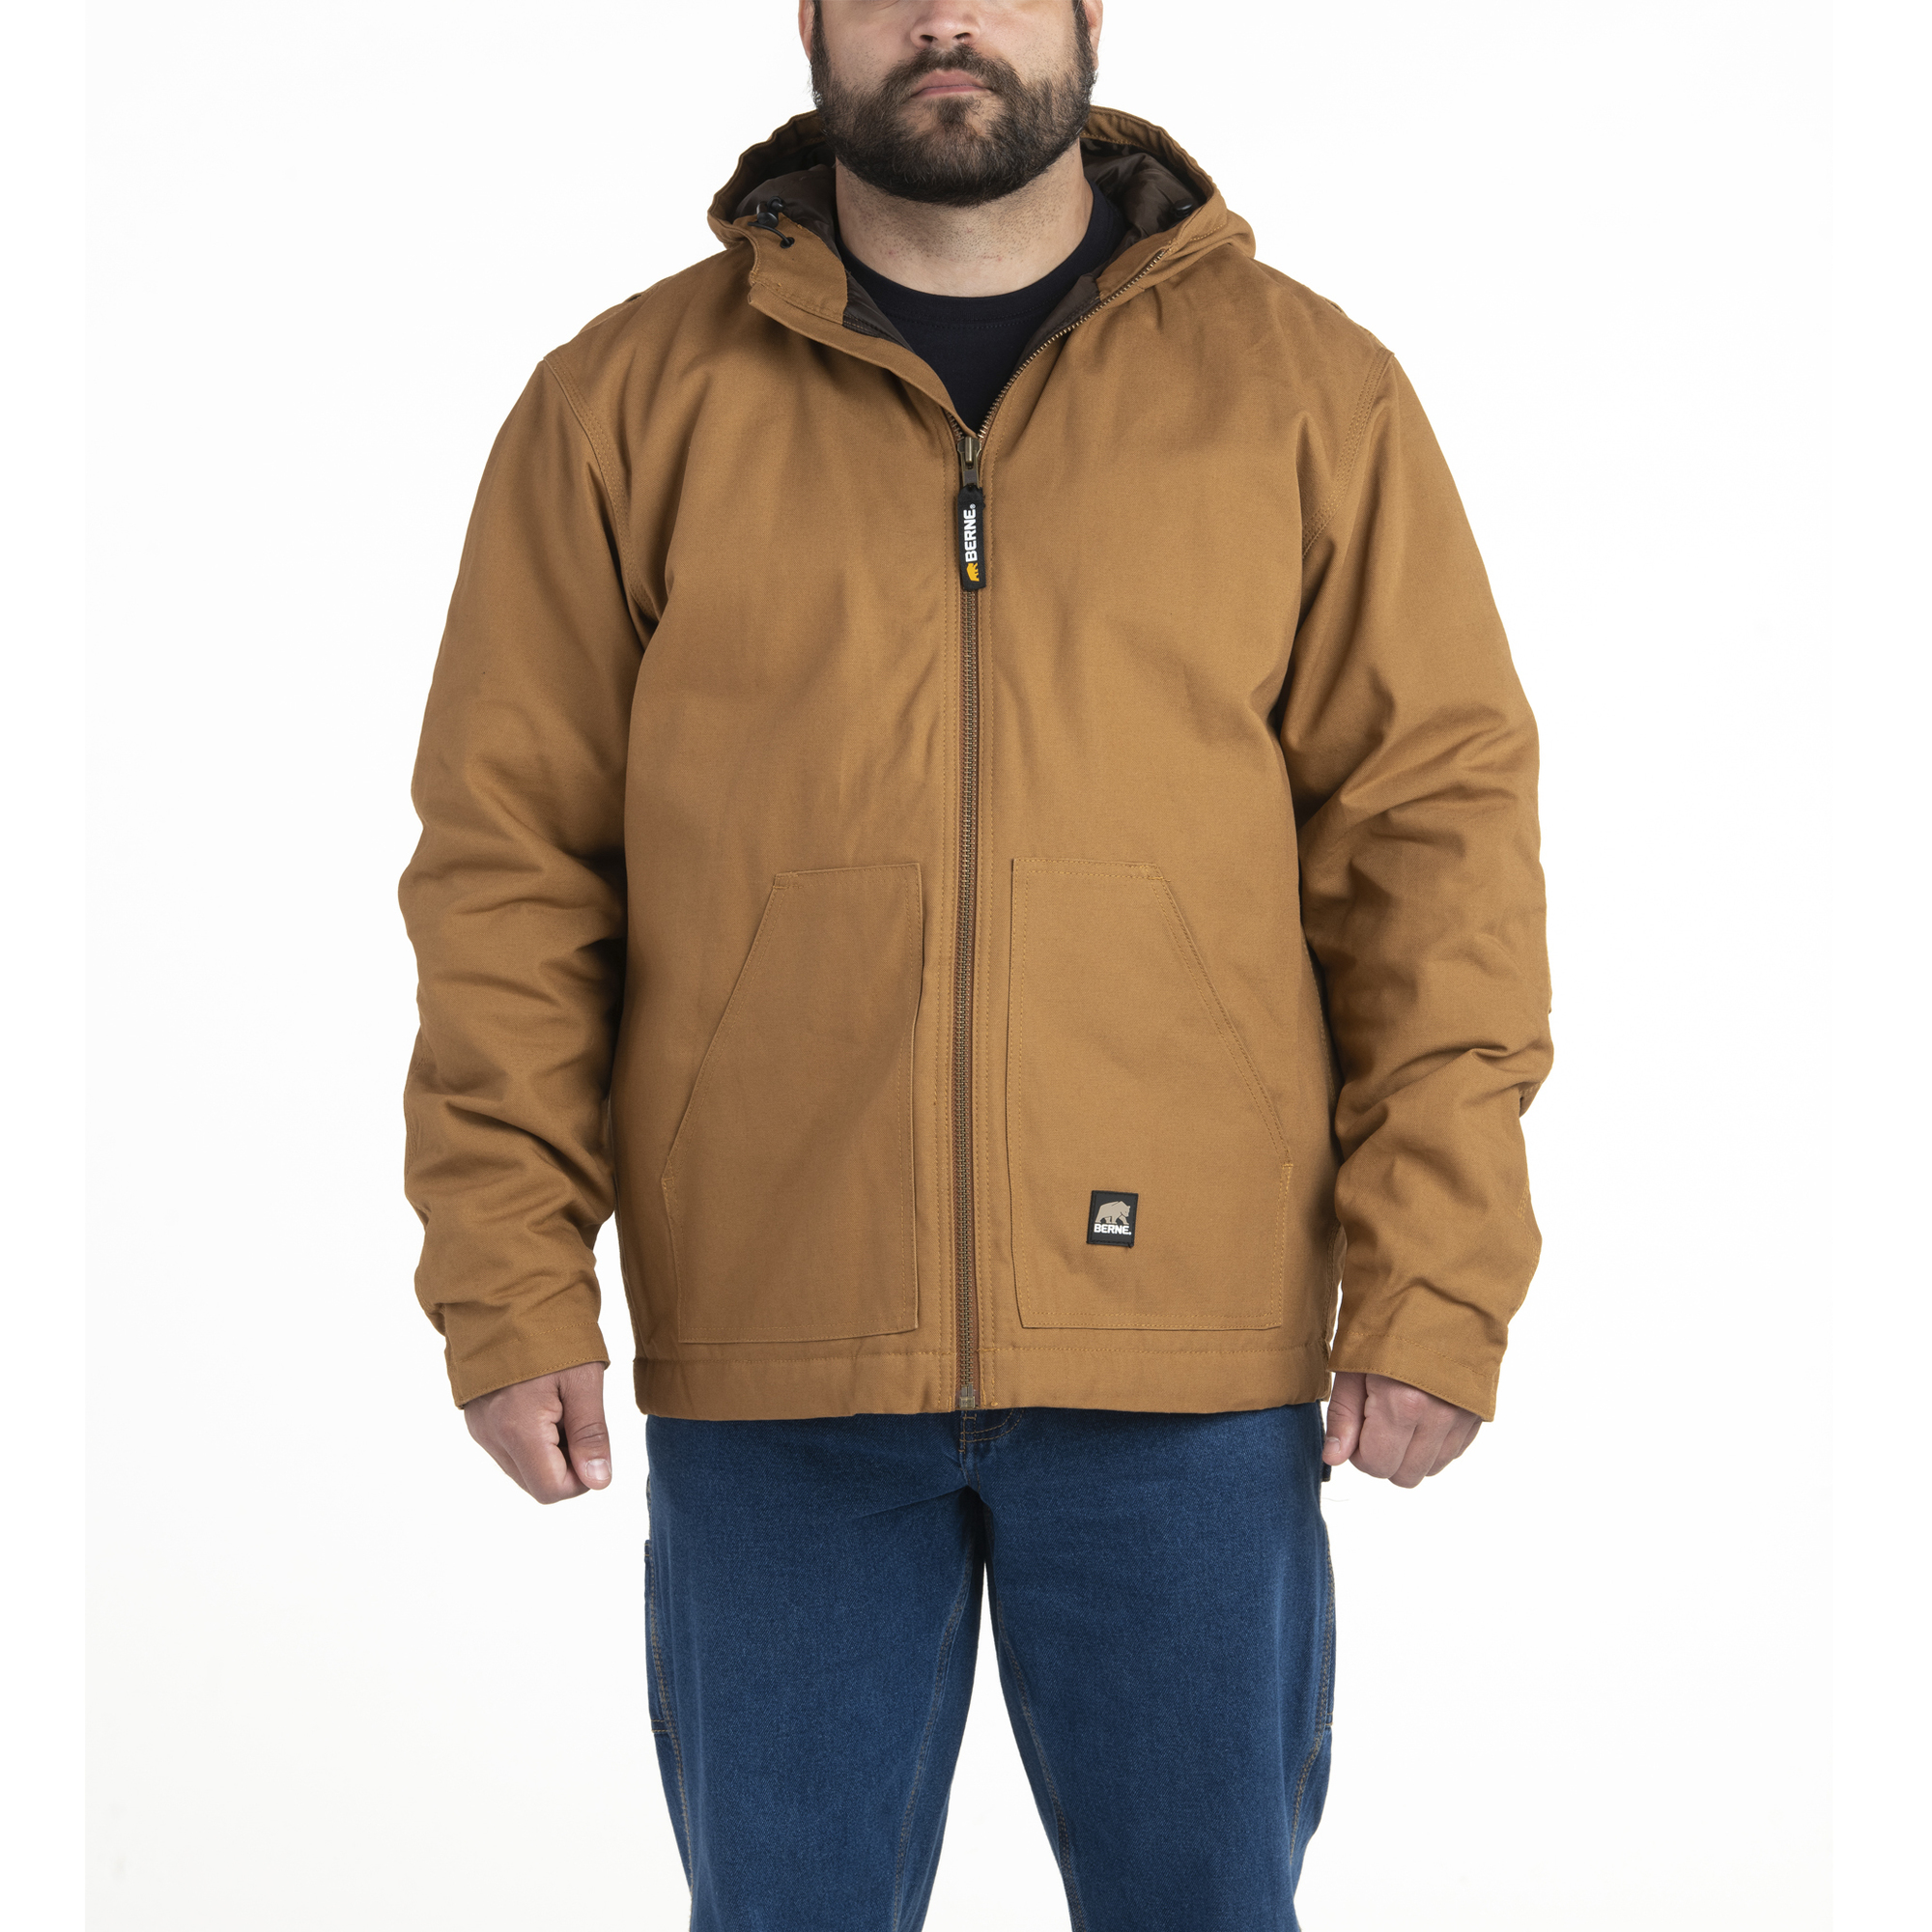 Berne Apparel, Workmans Hooded Jacket, Size 3XLT, Color Brown Duck, Model HJ65